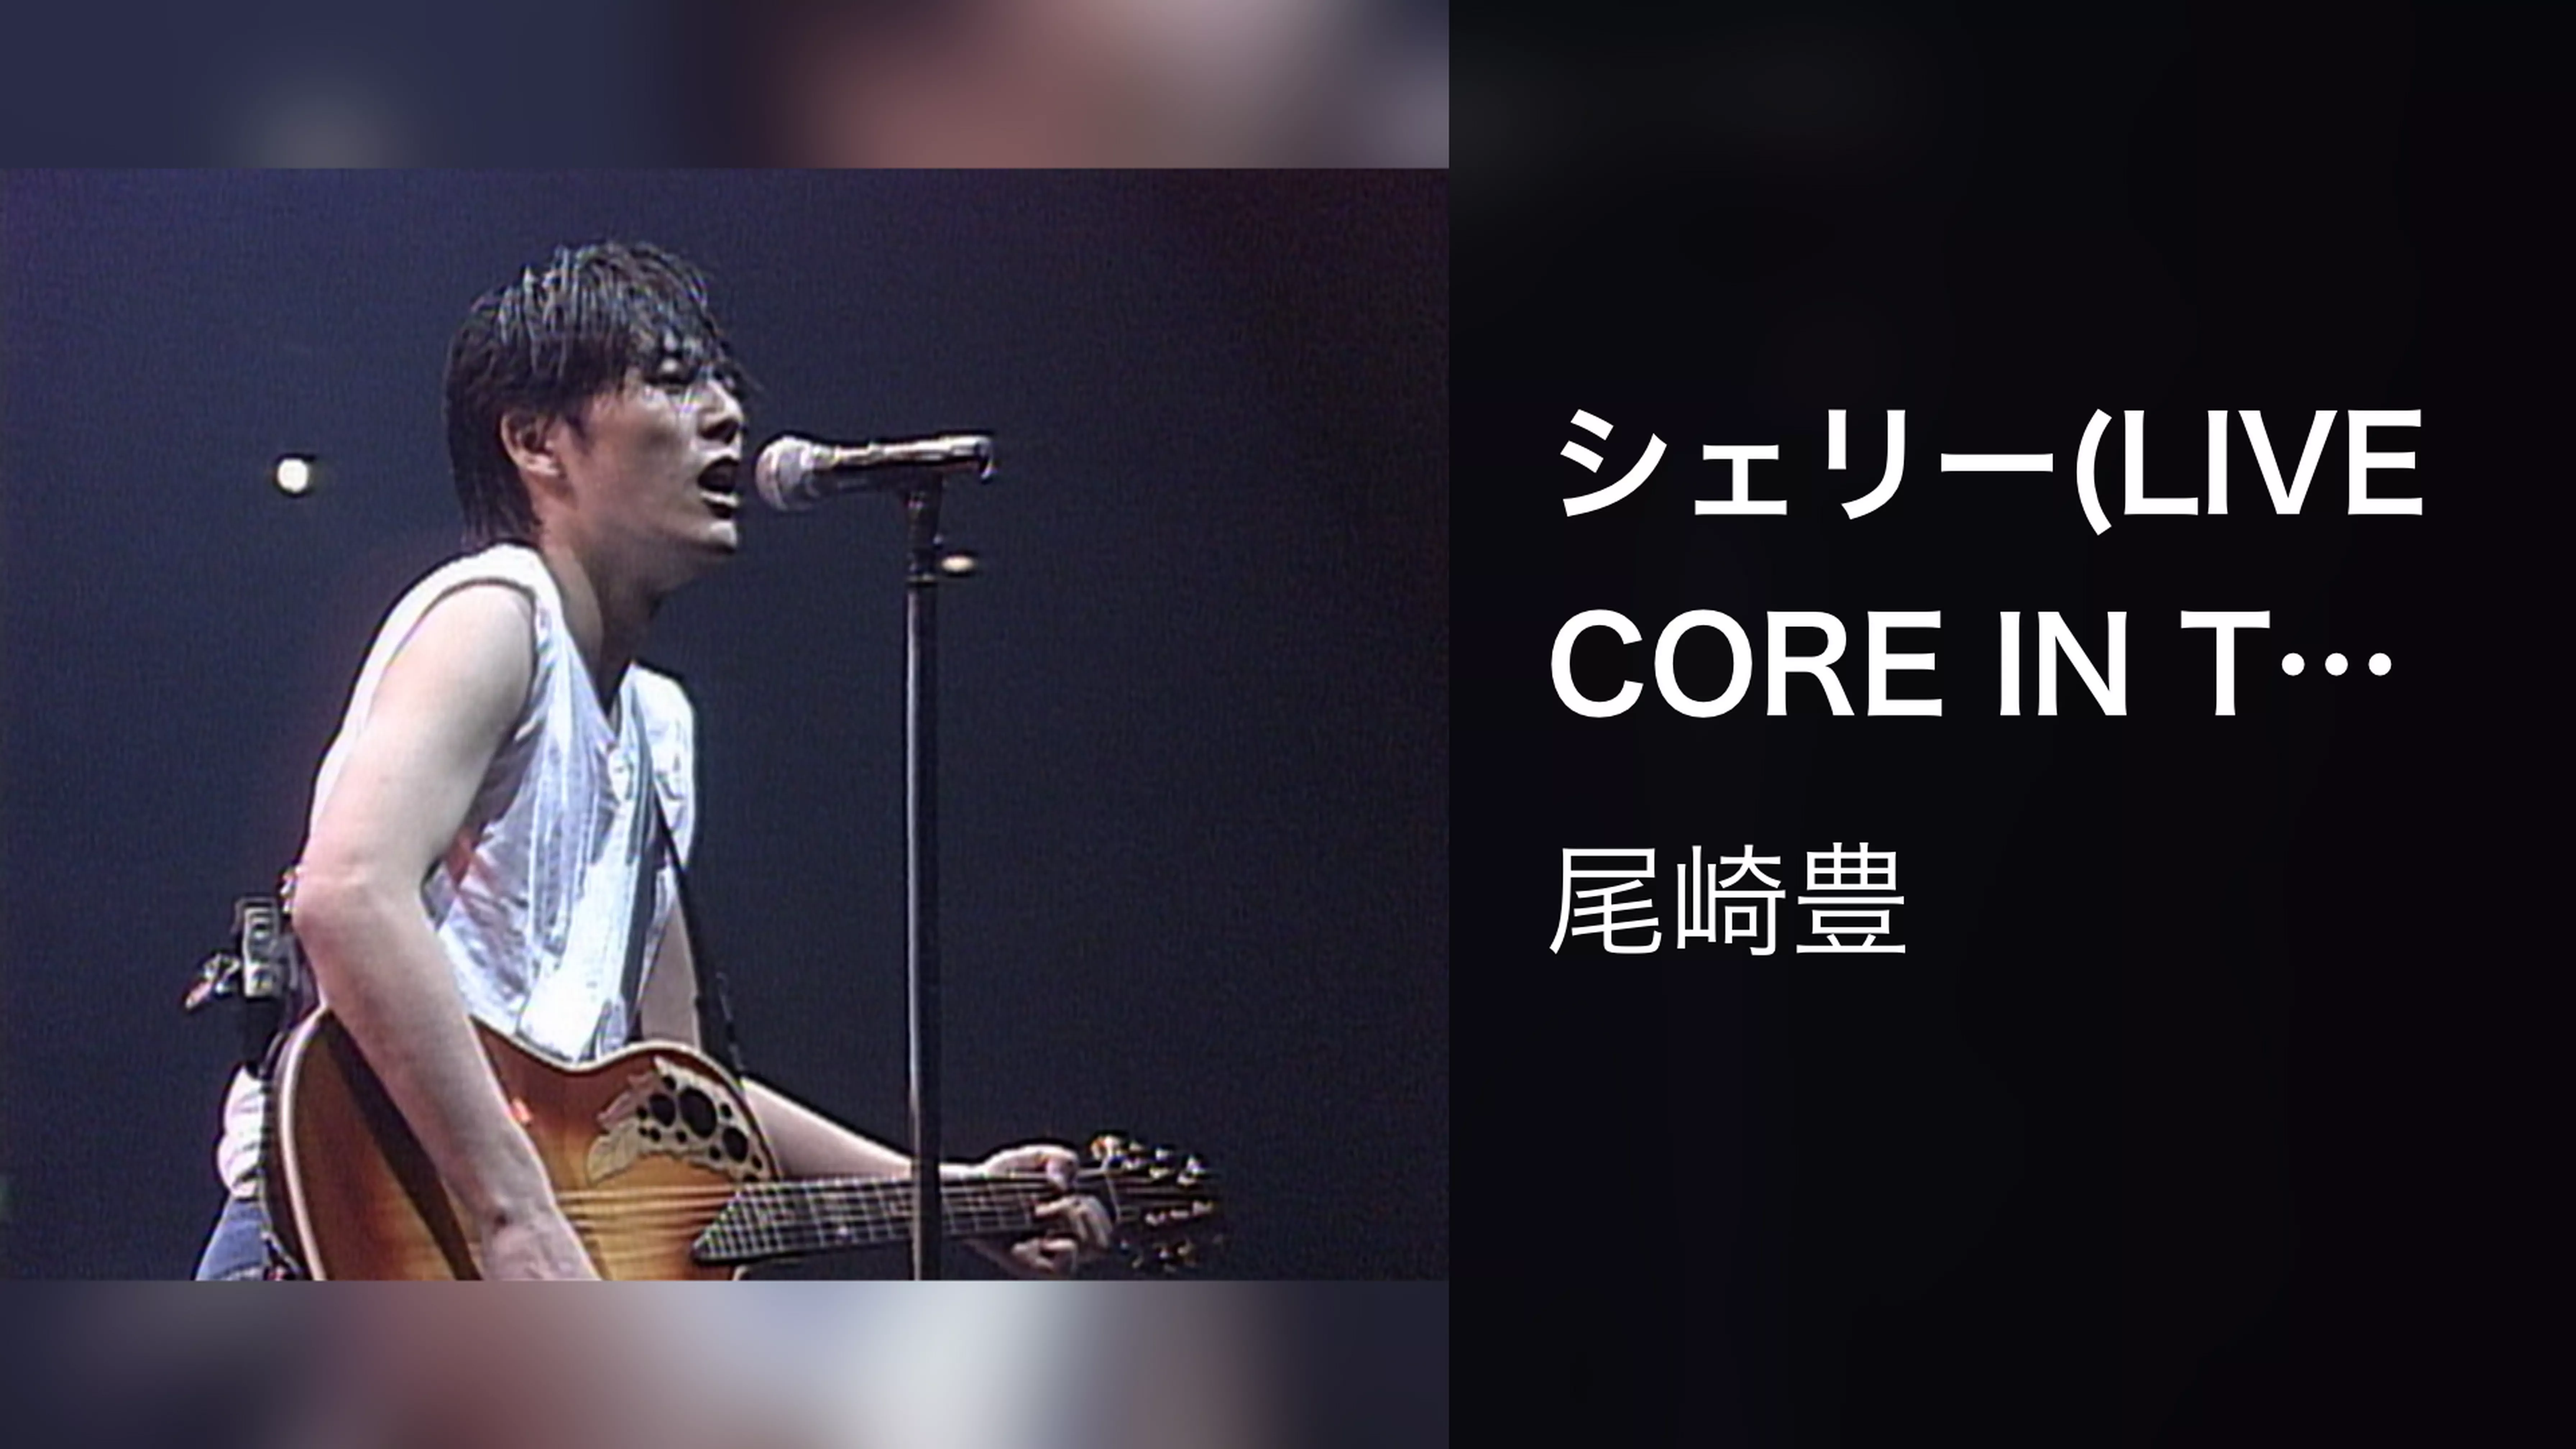 シェリー(LIVE CORE IN TOKYO DOME 1988・9・12)